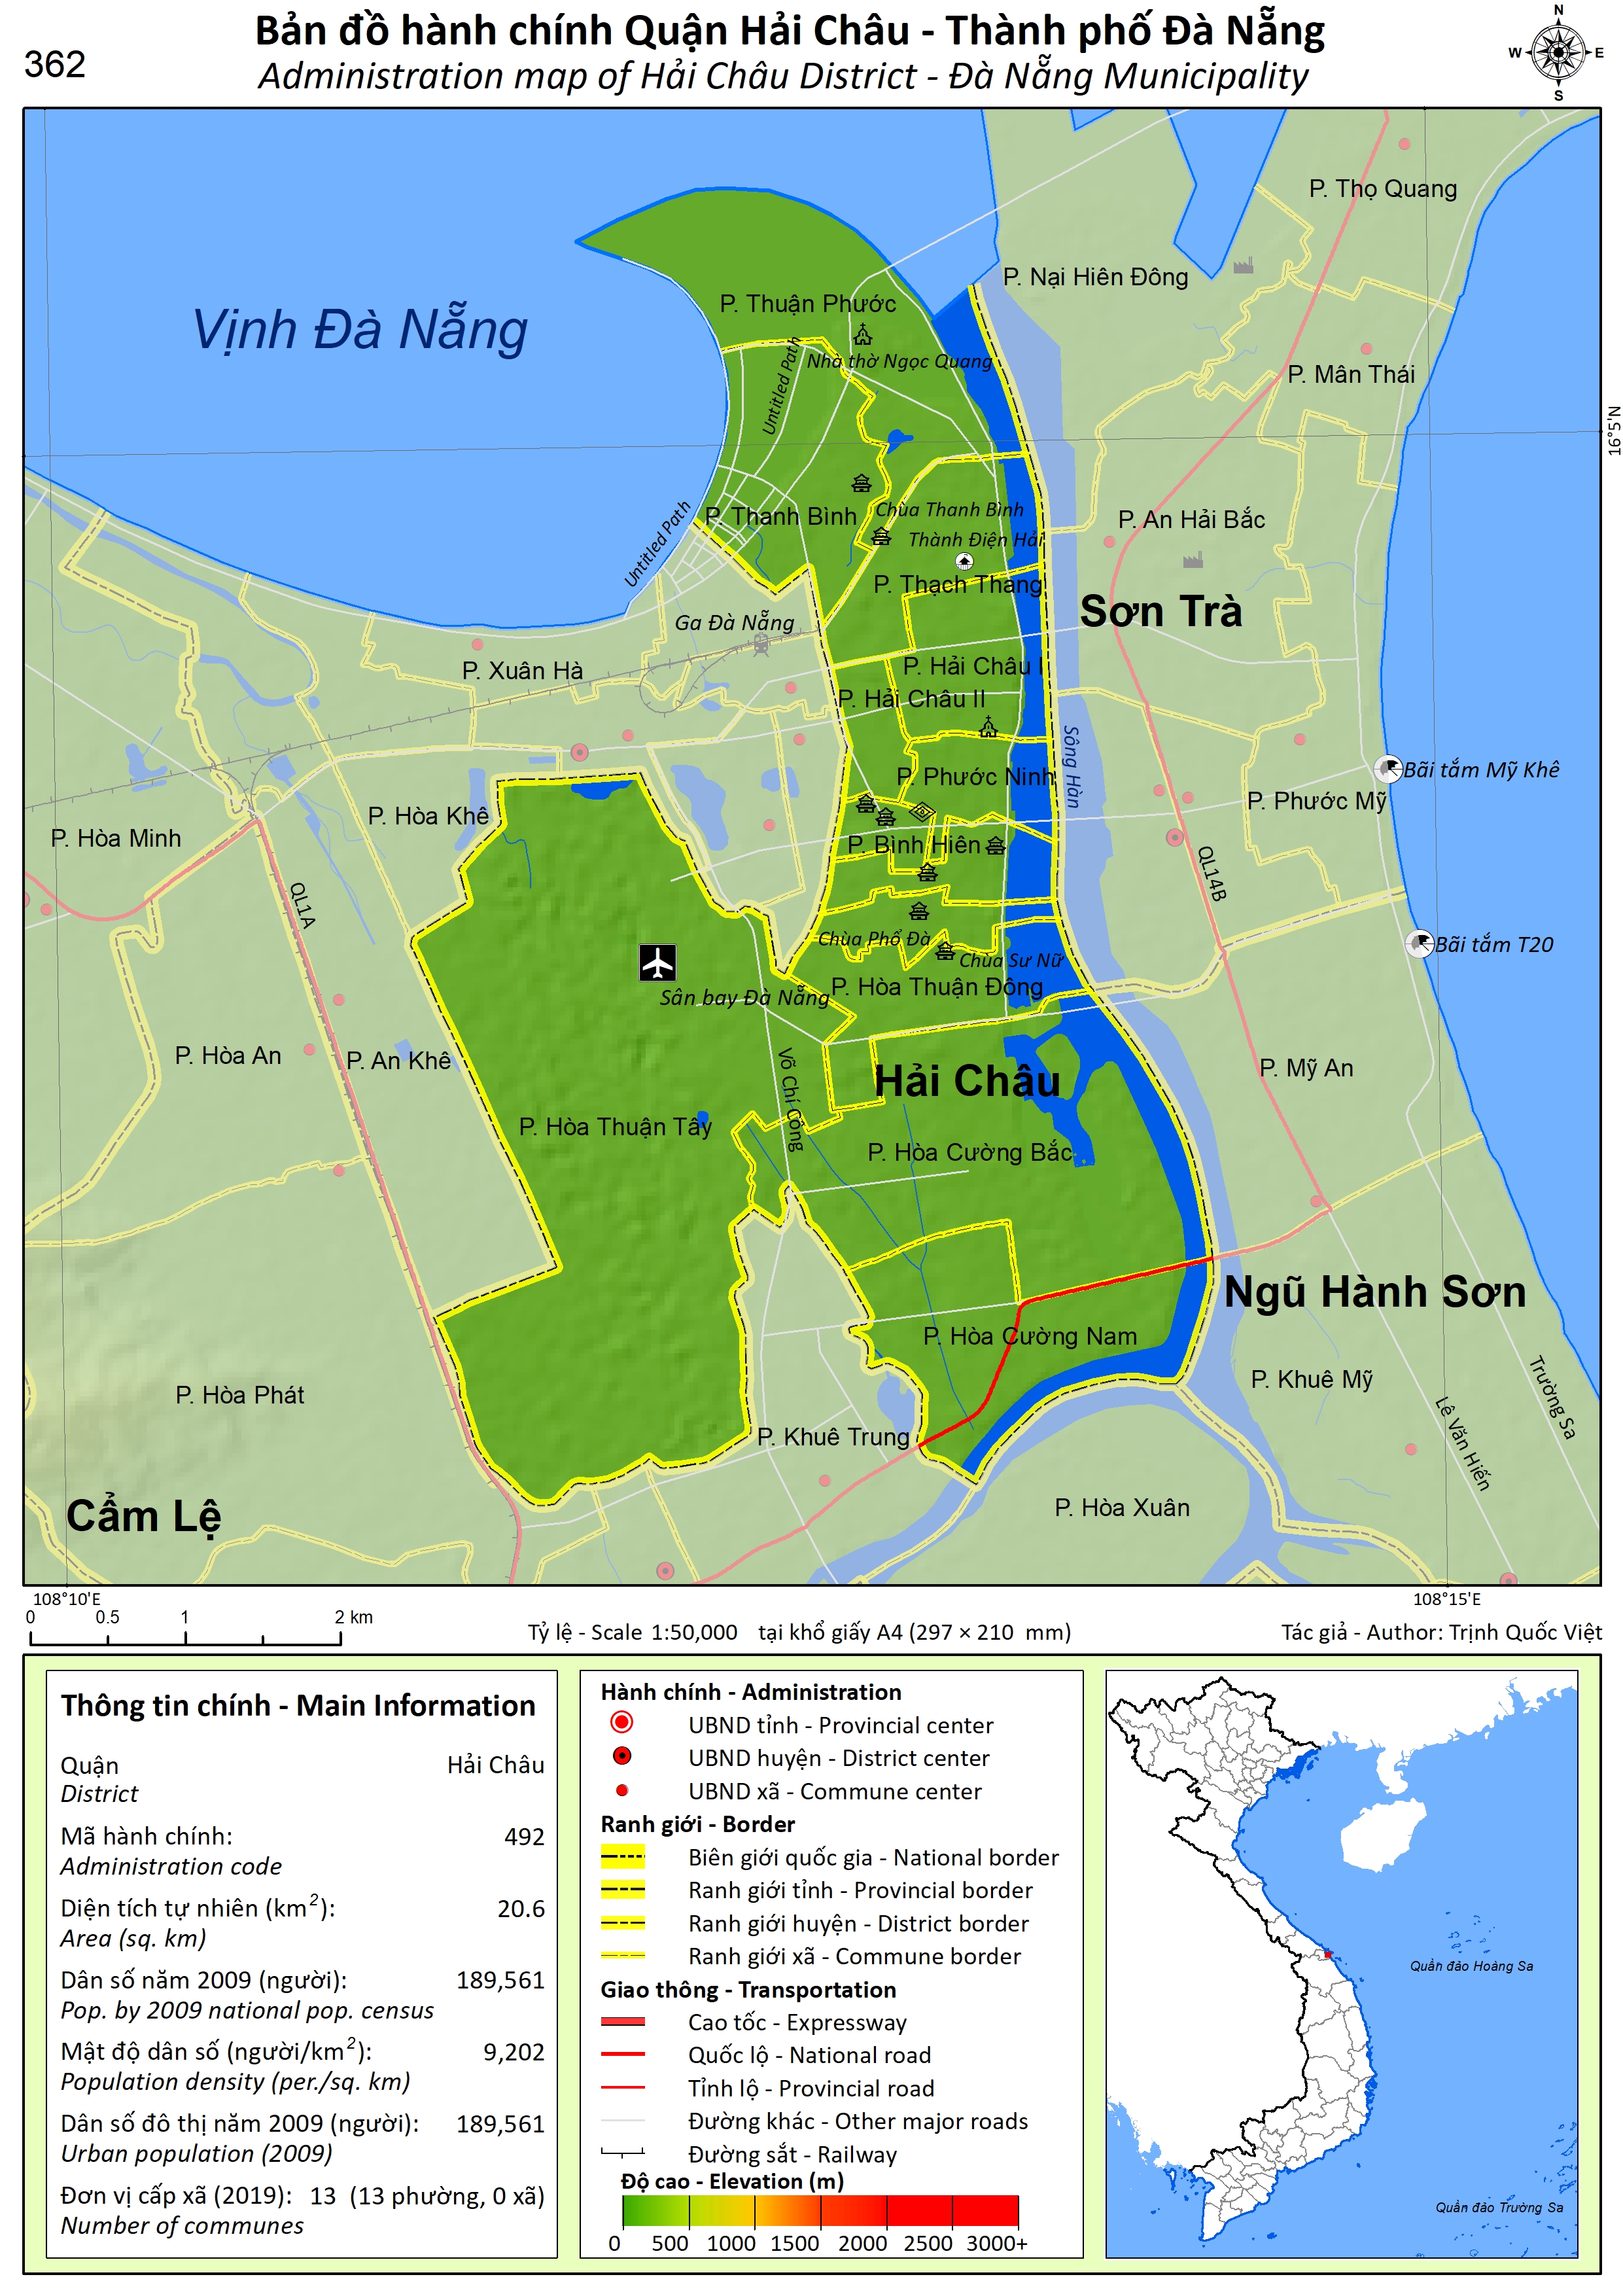 Bản đồ quy hoạch thành phố Đà Nẵng đến năm 2030